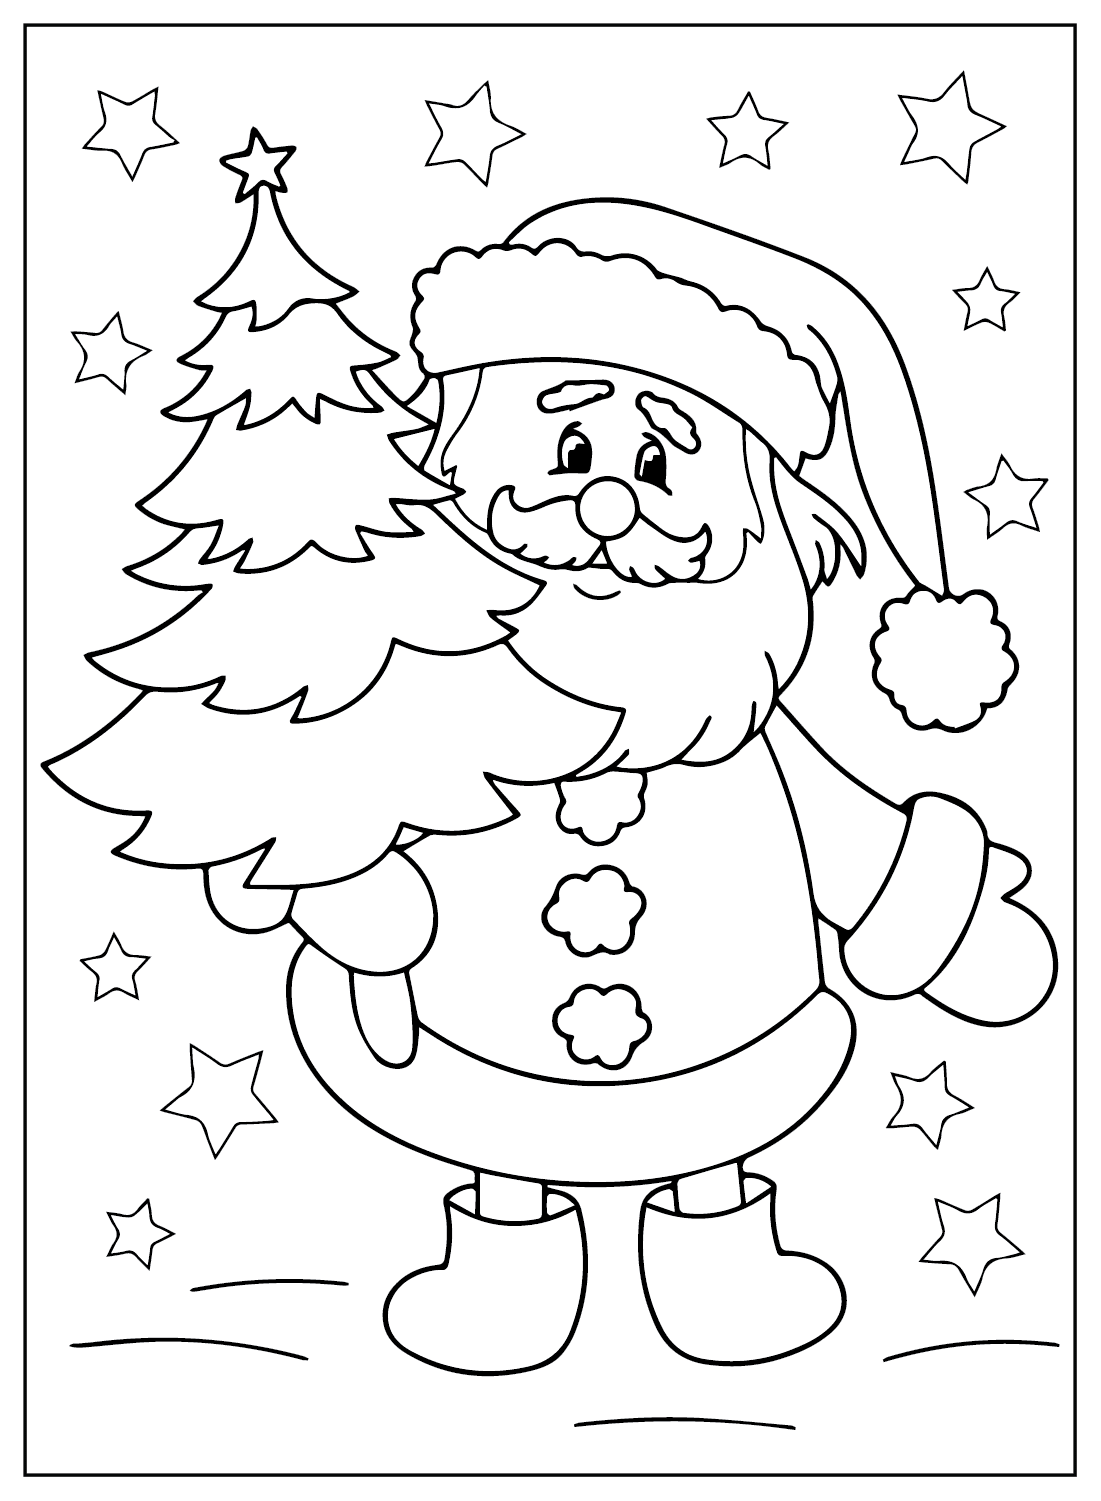 Christmas Santa Claus Coloring Page from Santa Claus